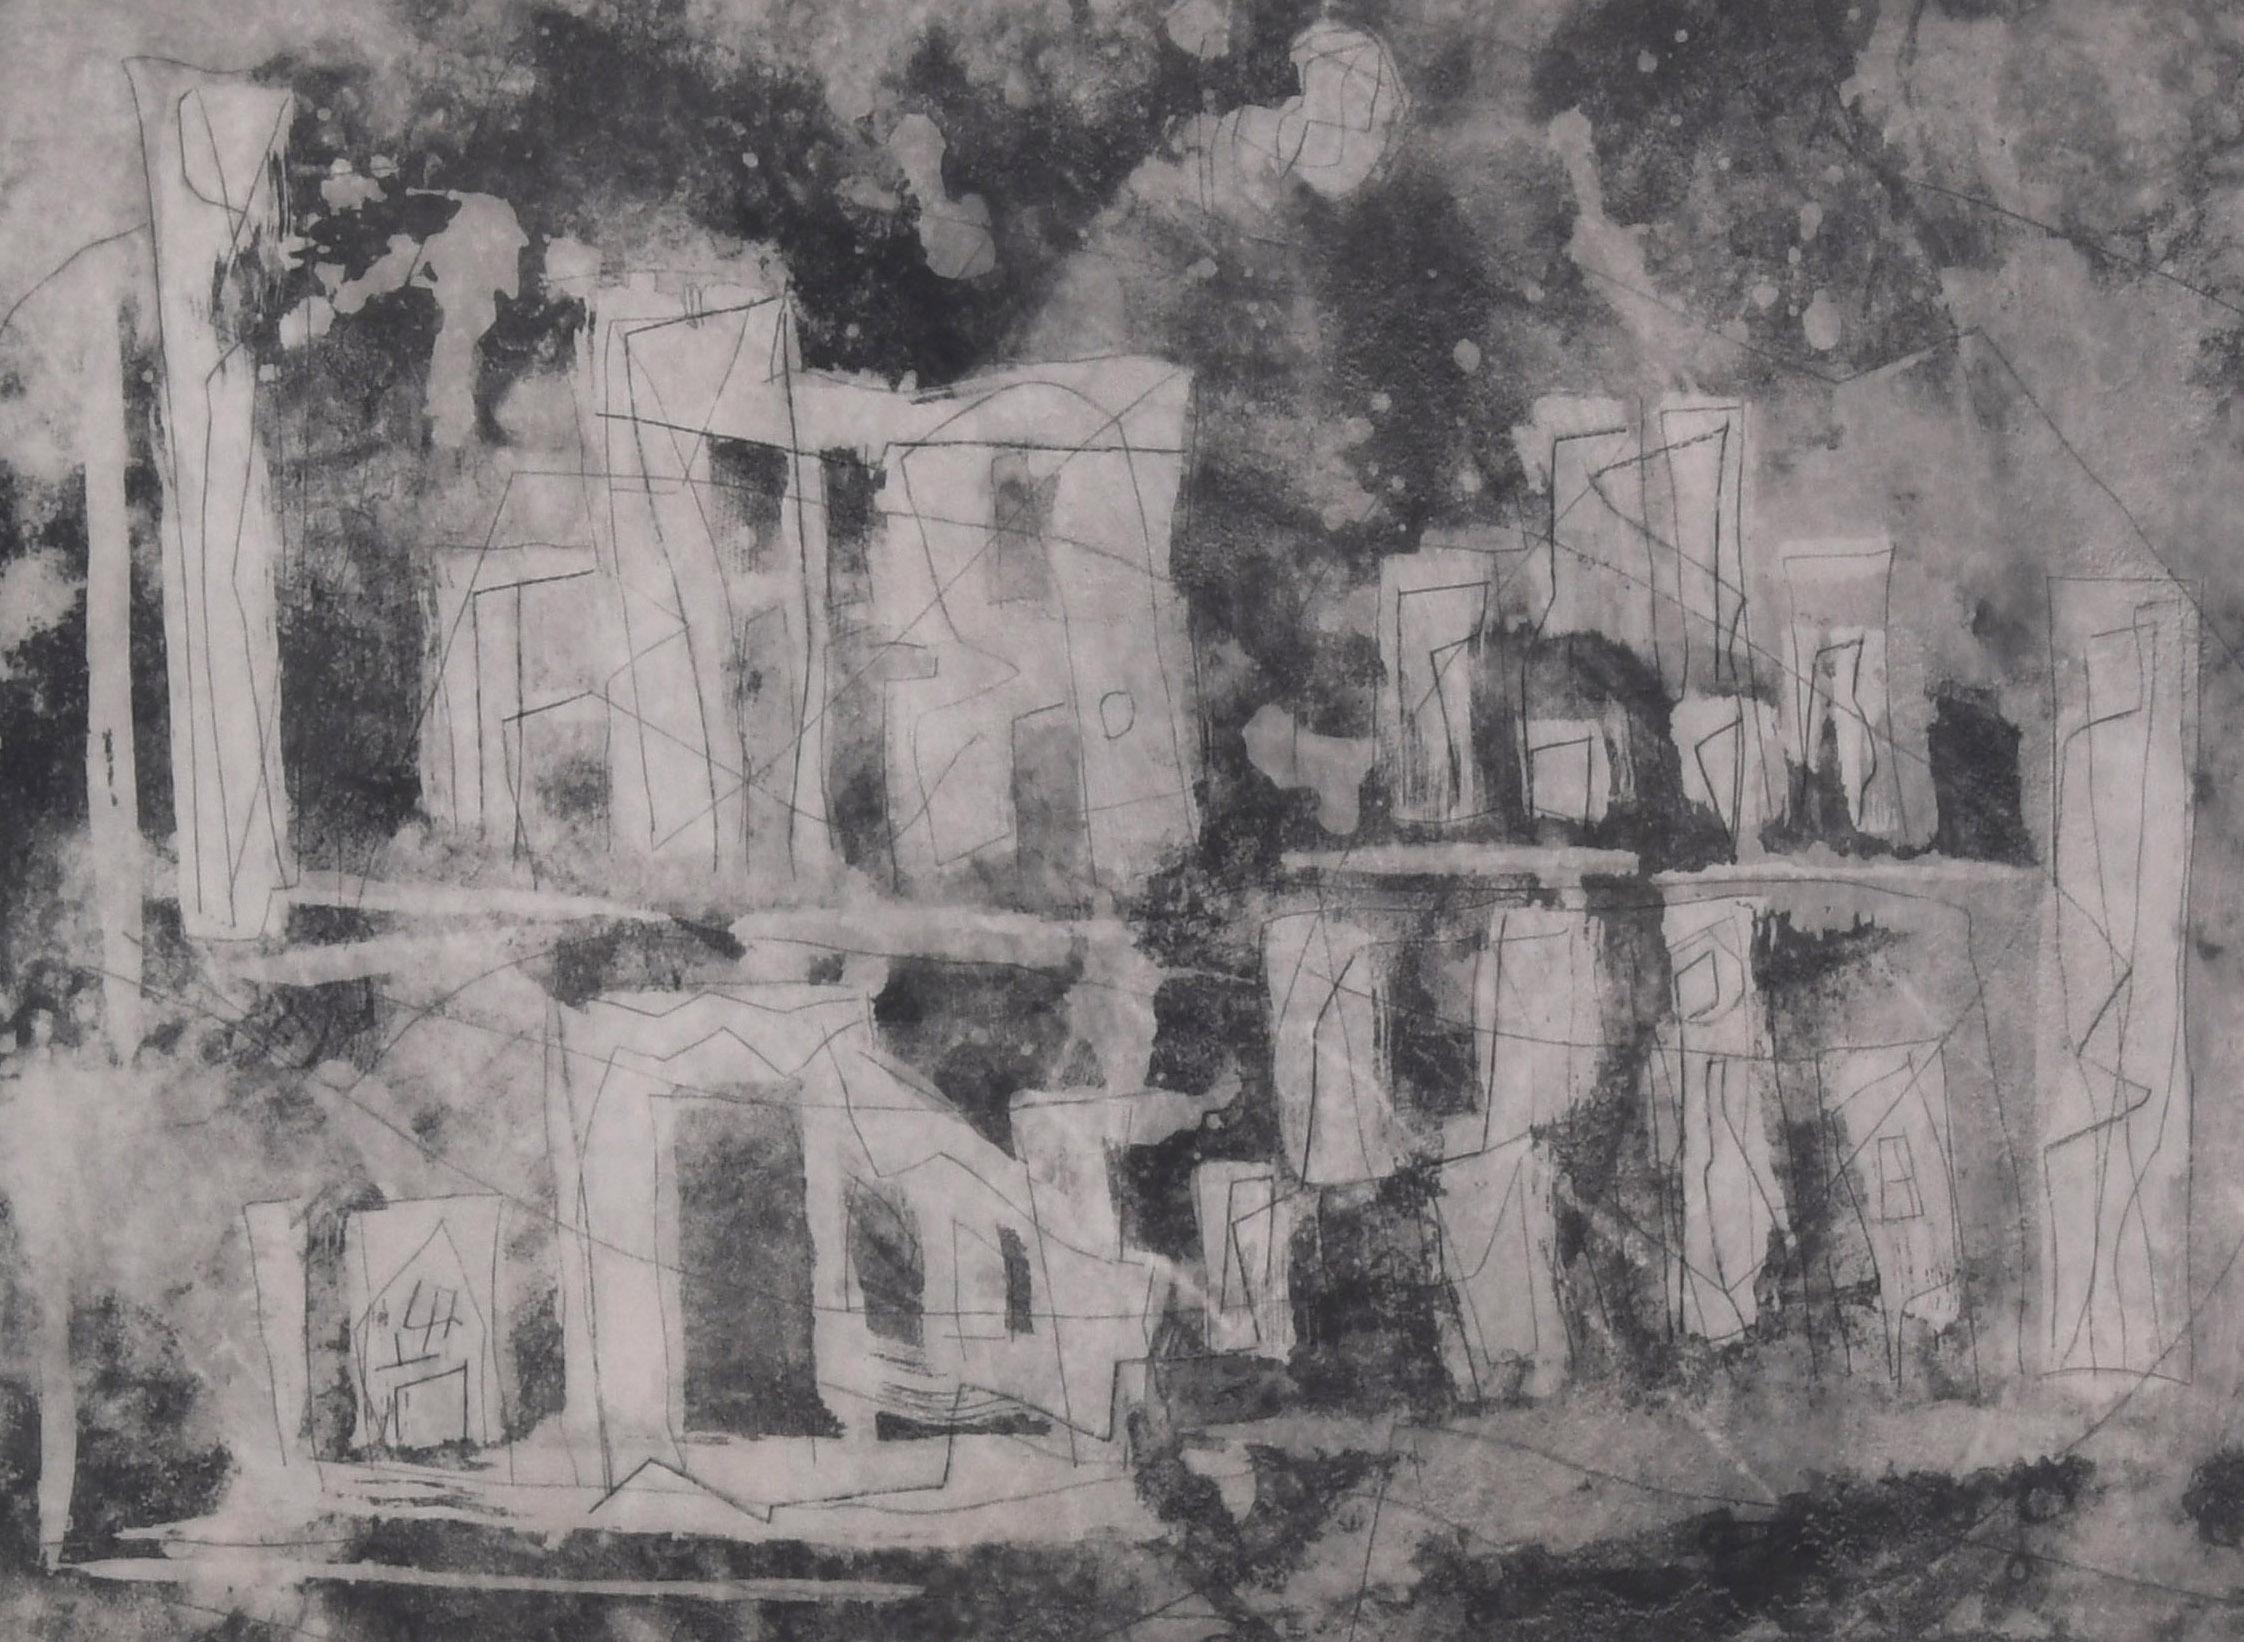 Antike Landschaft II (Antike Stadt)
Radierung und Kaltnadel, 1953-55
Vom Künstler mit Bleistift signiert und betitelt (siehe Fotos)
Vermerk: 